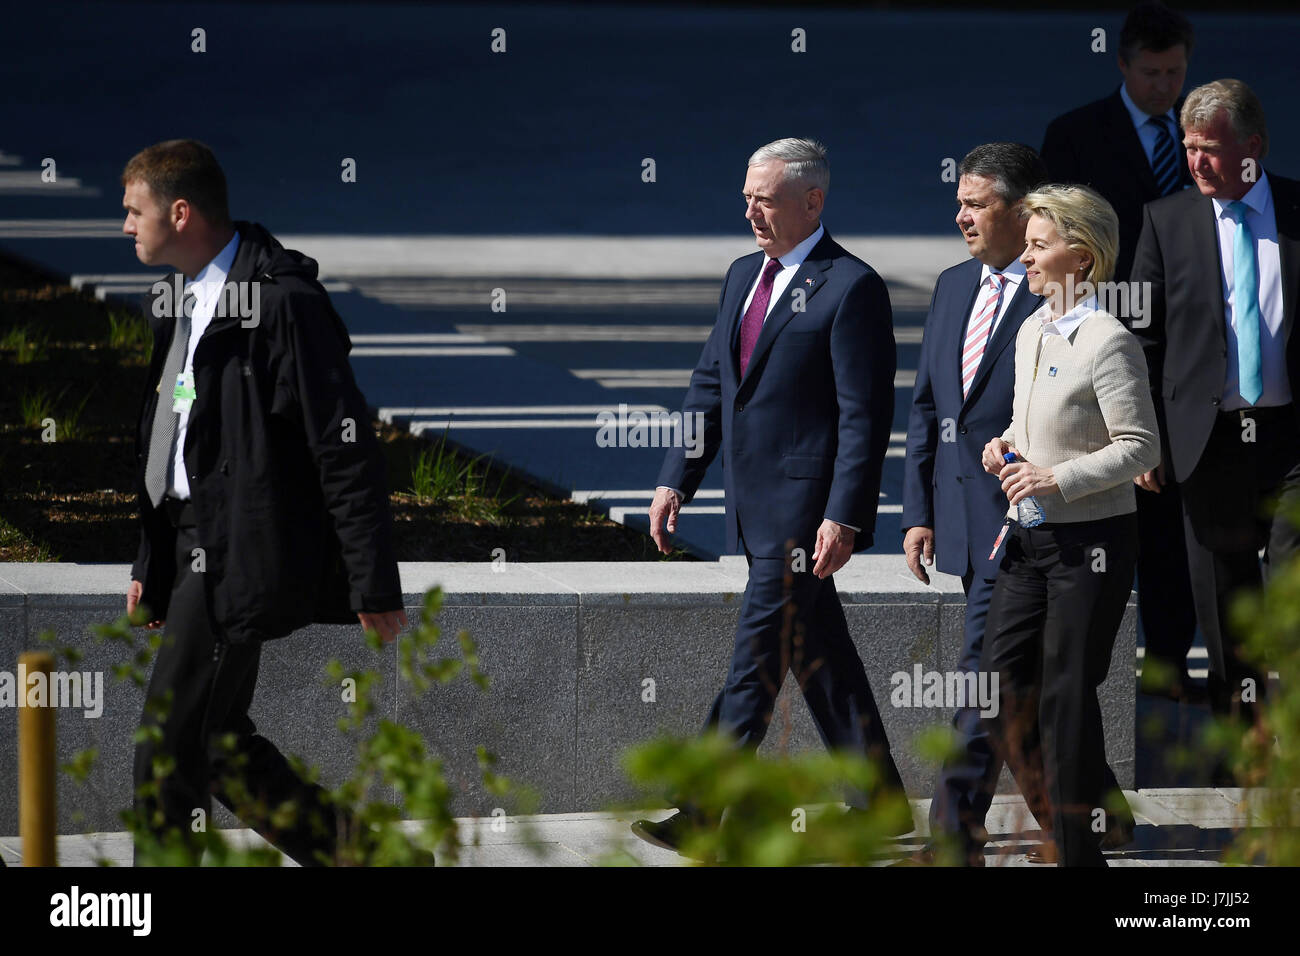 Il Segretario alla difesa degli Stati Uniti James Mattis (seconda a sinistra) arriva con il Ministro della difesa greco Panos Kammenos (terza a sinistra) e il ministro della Difesa tedesco, Ursula von der Leyen (seconda a destra) durante l'Organizzazione del Trattato del Nord Atlantico (NATO) Vertice di Bruxelles. Foto Stock